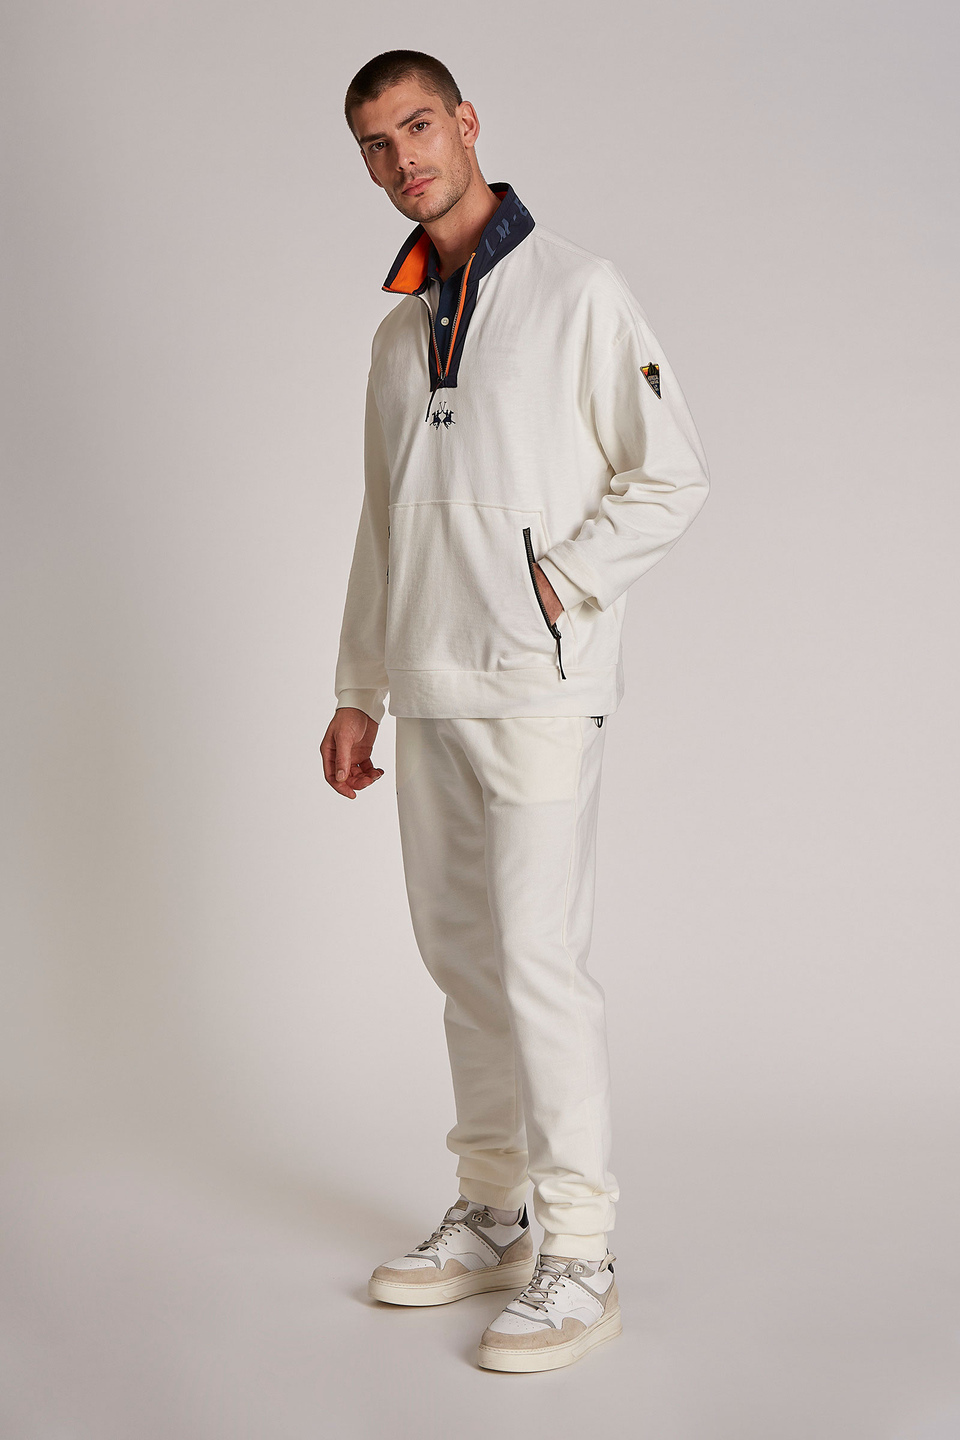 Polo de hombre de manga corta de algodón 100 %, modelo holgado | La Martina - Official Online Shop